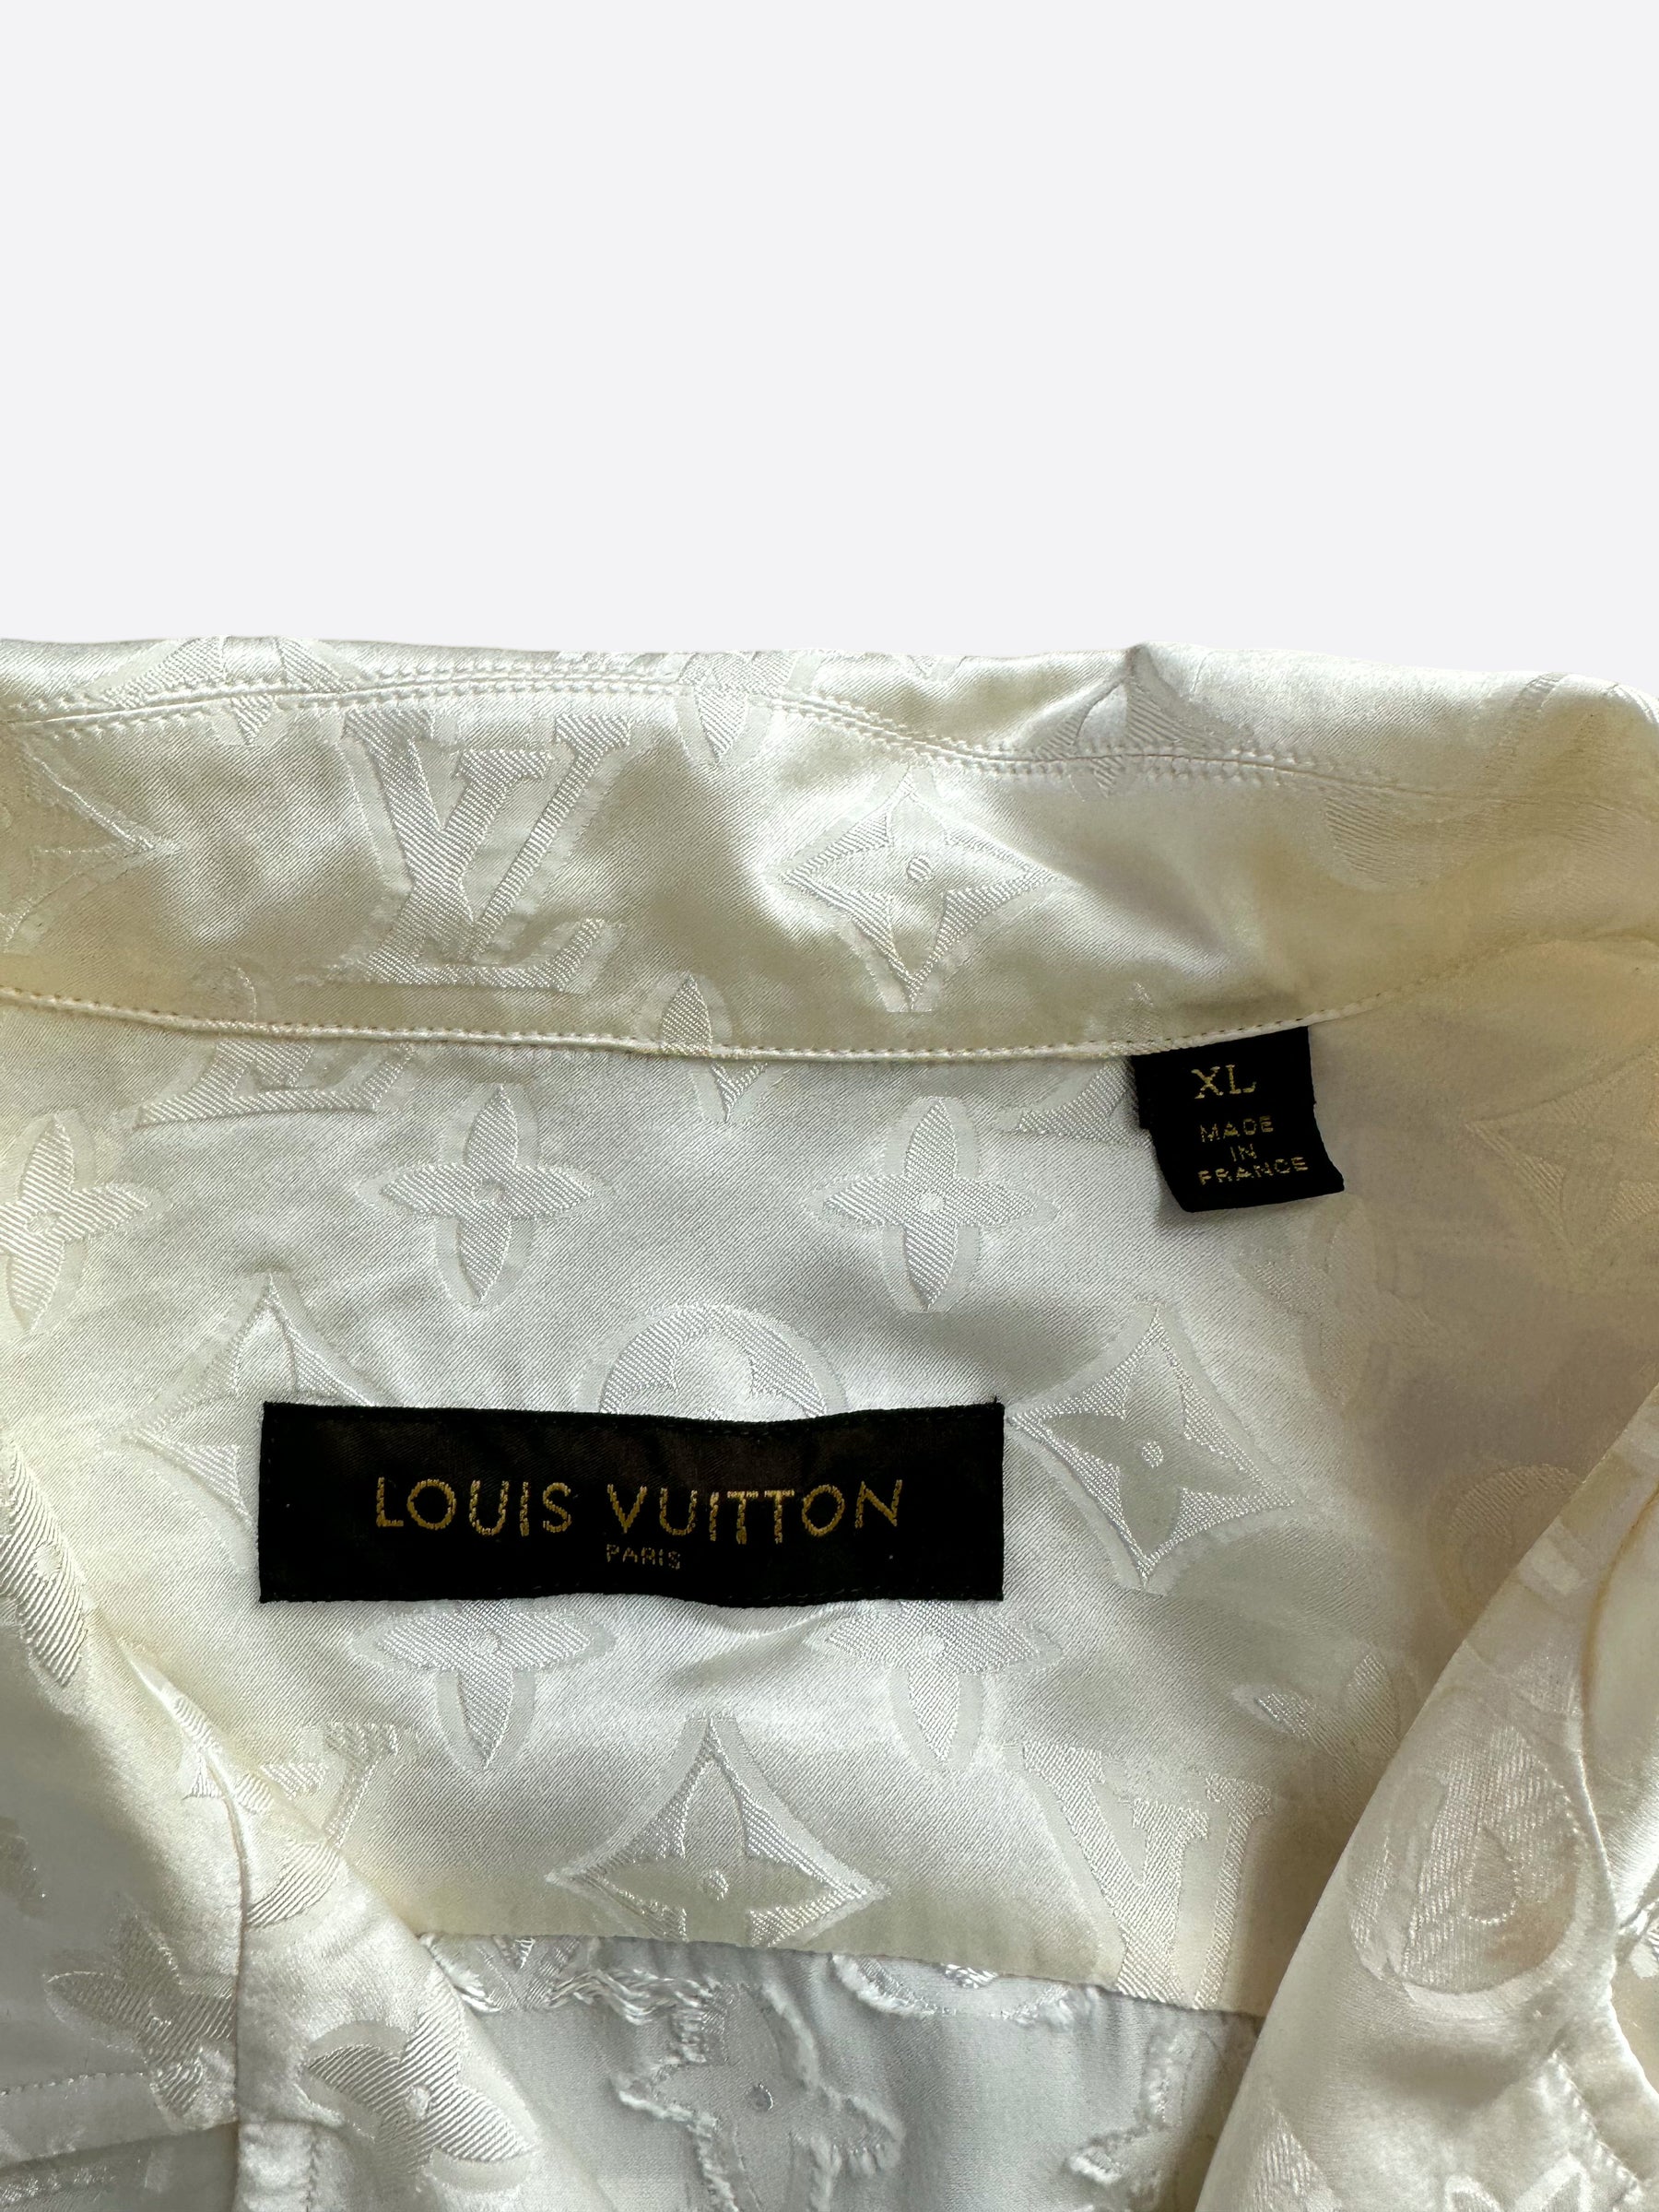 Louis Vuitton x Supreme Jacquard Silk Pajama Shirt | Size L, Apparel in Blue/White